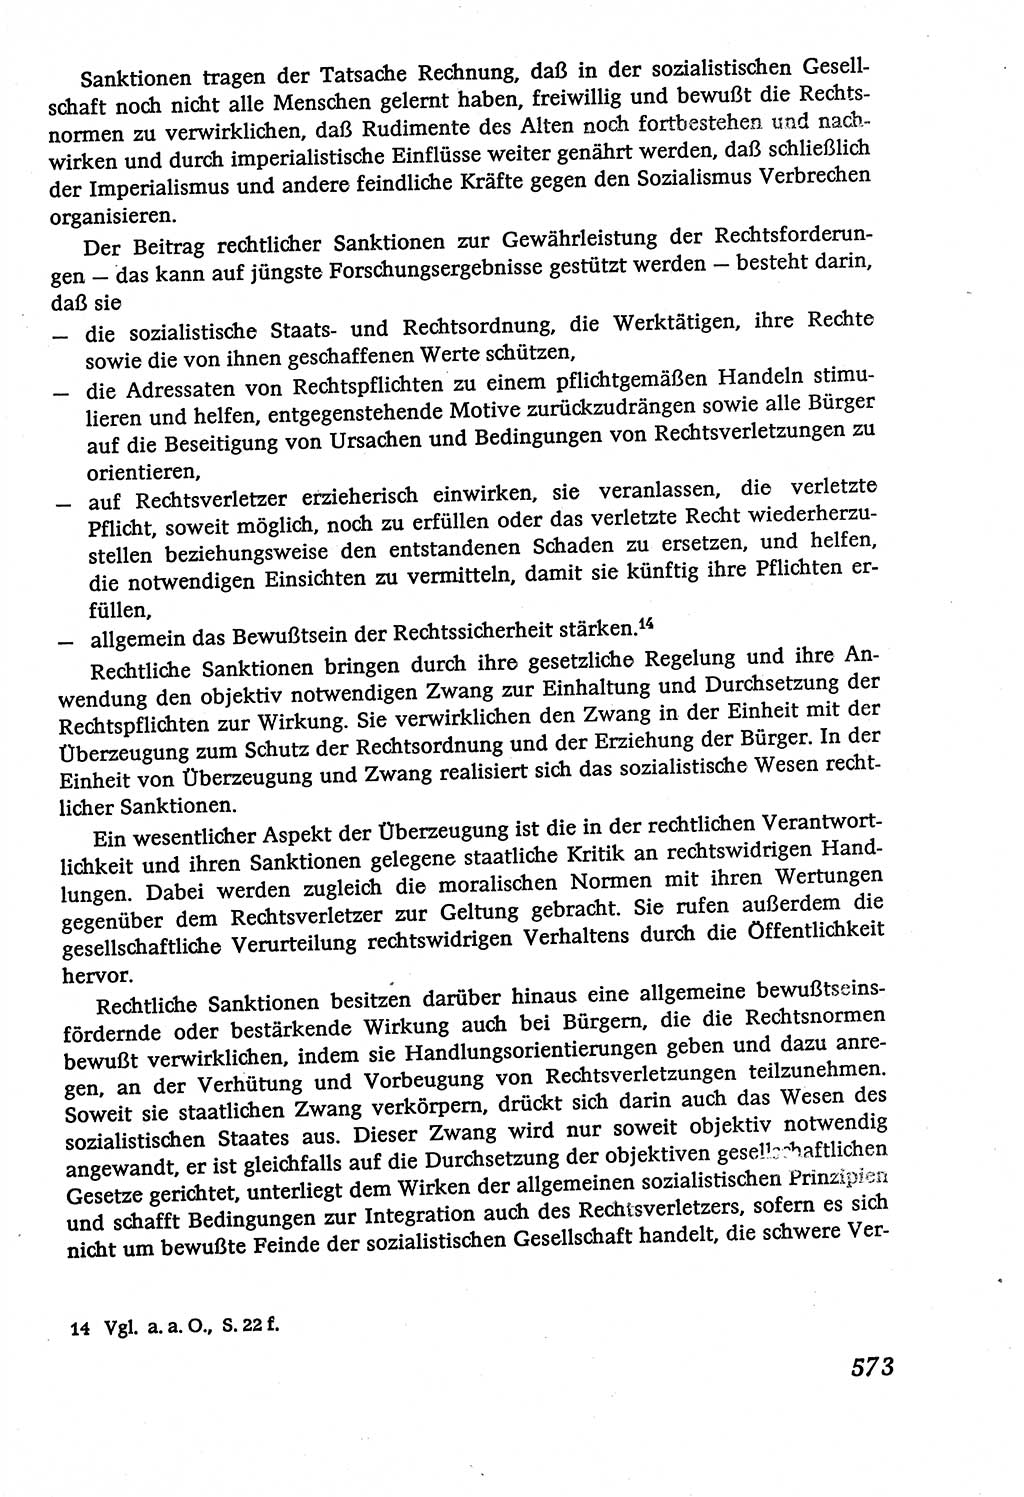 Marxistisch-leninistische (ML) Staats- und Rechtstheorie [Deutsche Demokratische Republik (DDR)], Lehrbuch 1980, Seite 573 (ML St.-R.-Th. DDR Lb. 1980, S. 573)